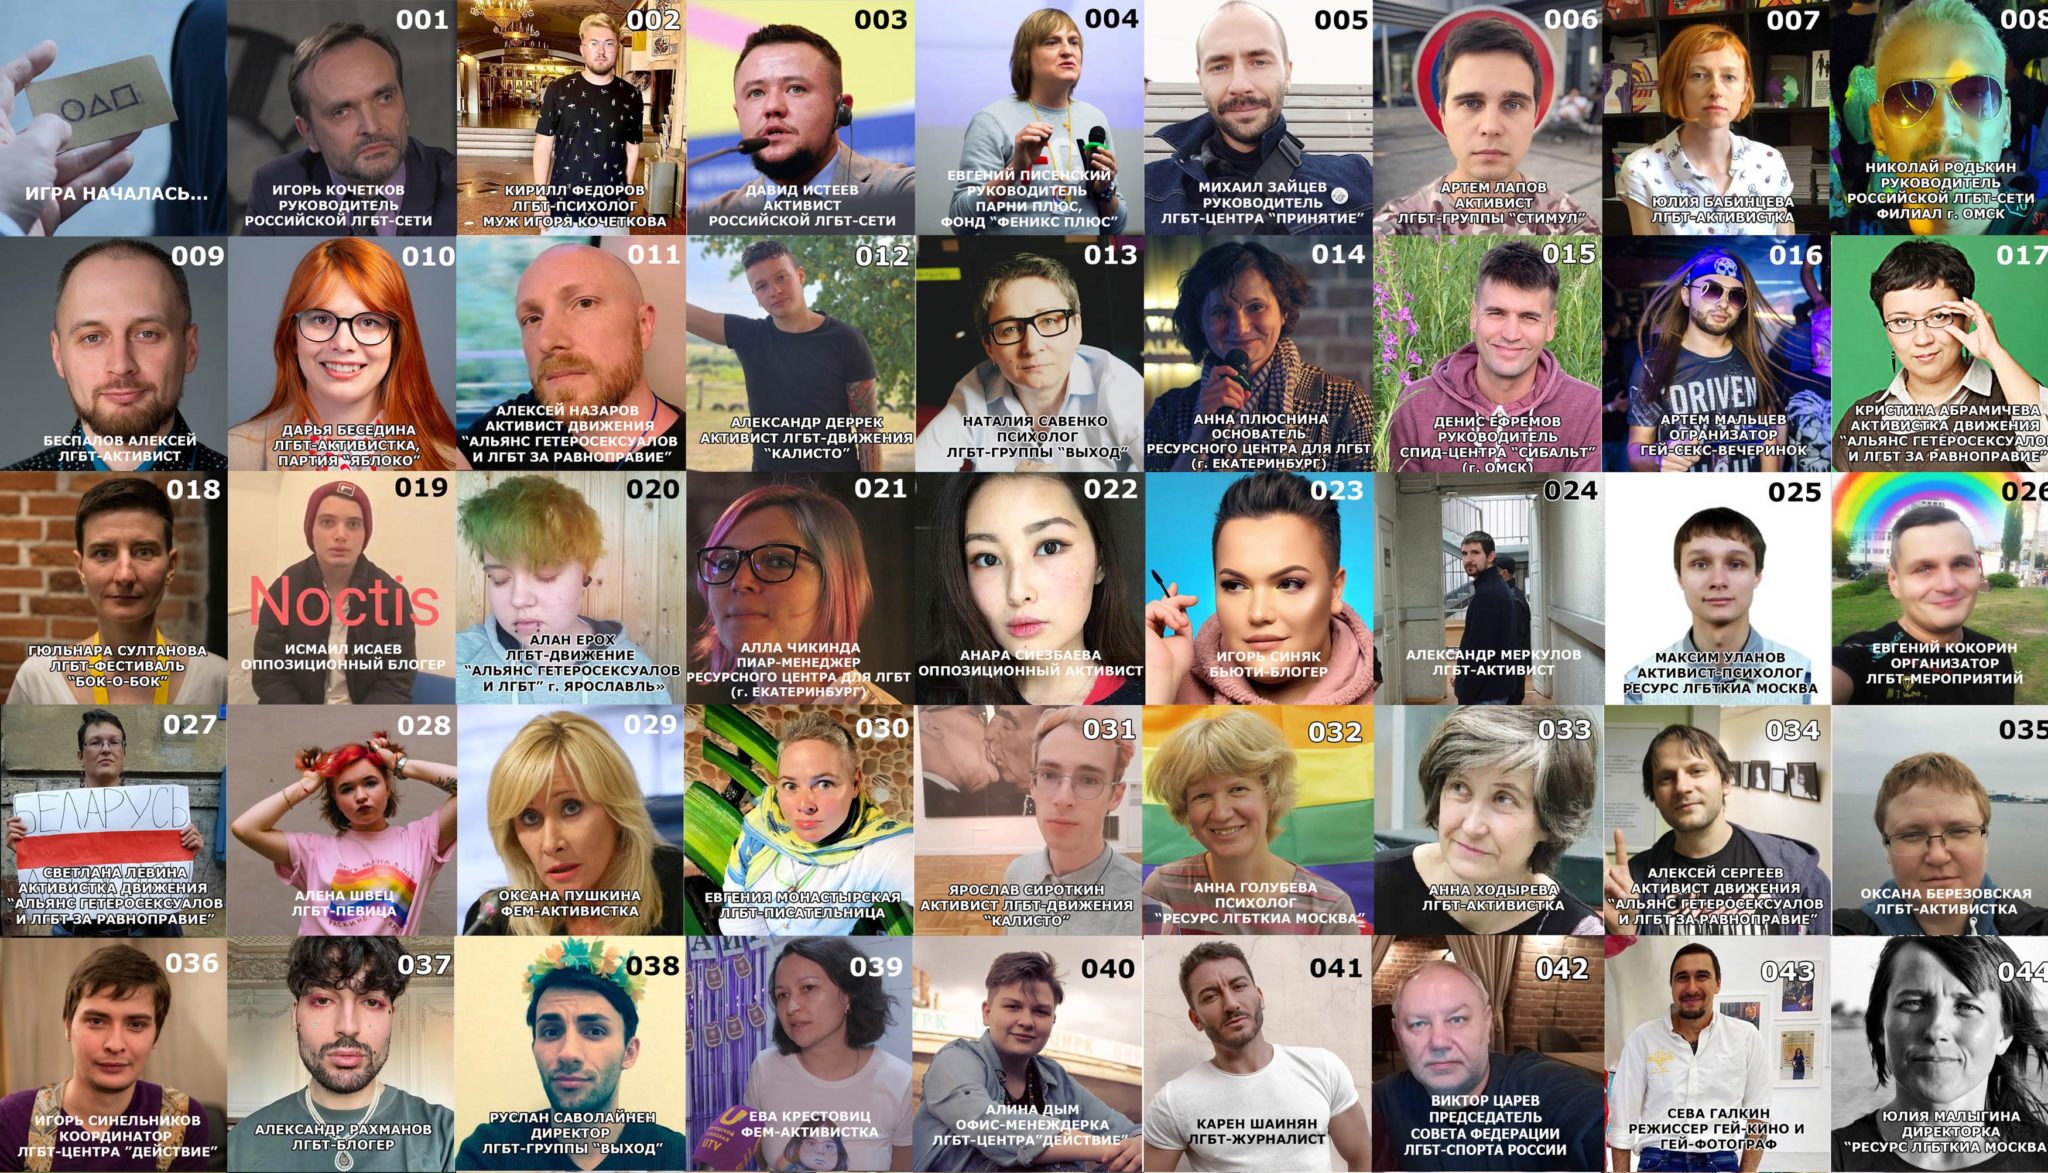 Гомофобы угрожают «адом» 80 ЛГБТ-активистам, требуя «покинуть РФ» - Парни  ПЛЮС